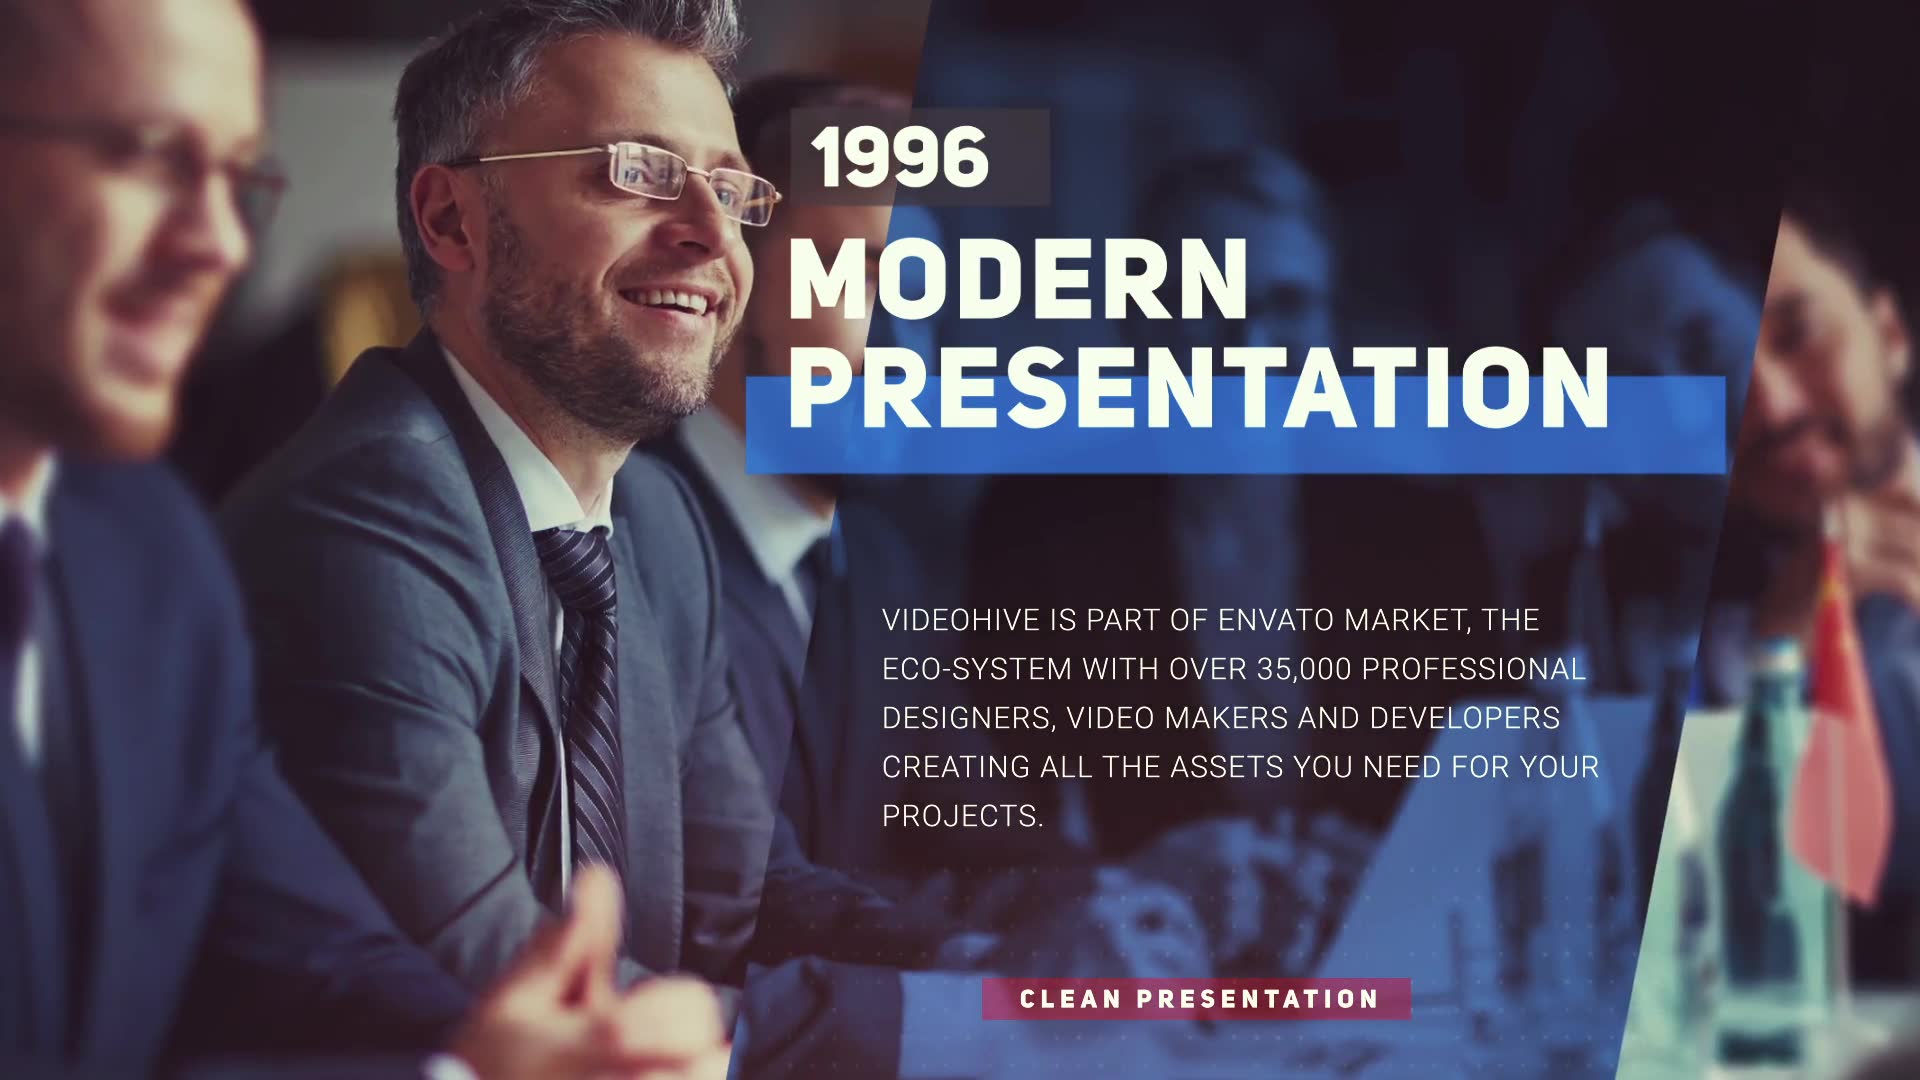 Modern Corporate Presentation Videohive 25638750 Premiere Pro Image 2